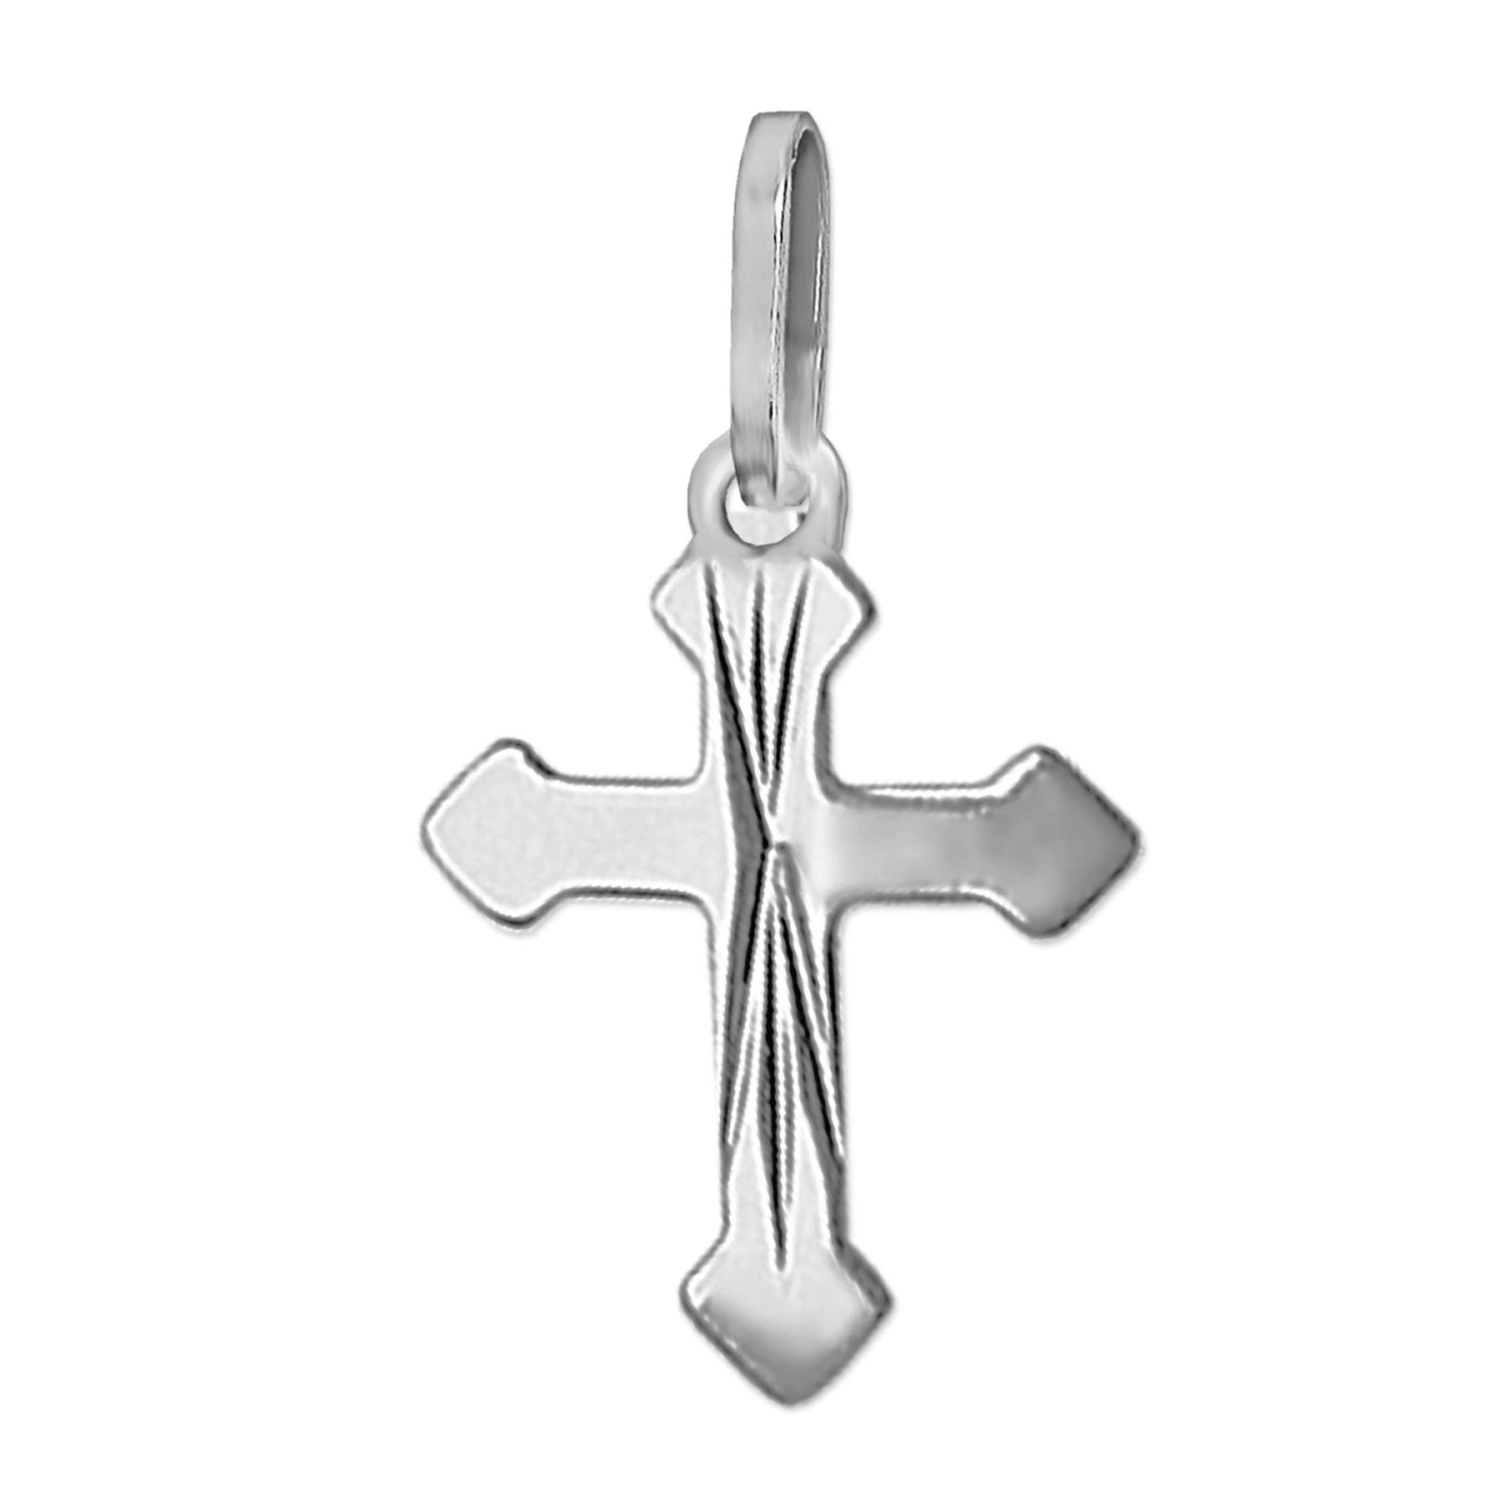 Silberner Anhänger Kreuz 10 mm sehr flache dünne Form, glänzend mittig diamantiert STERLING SILBER 925